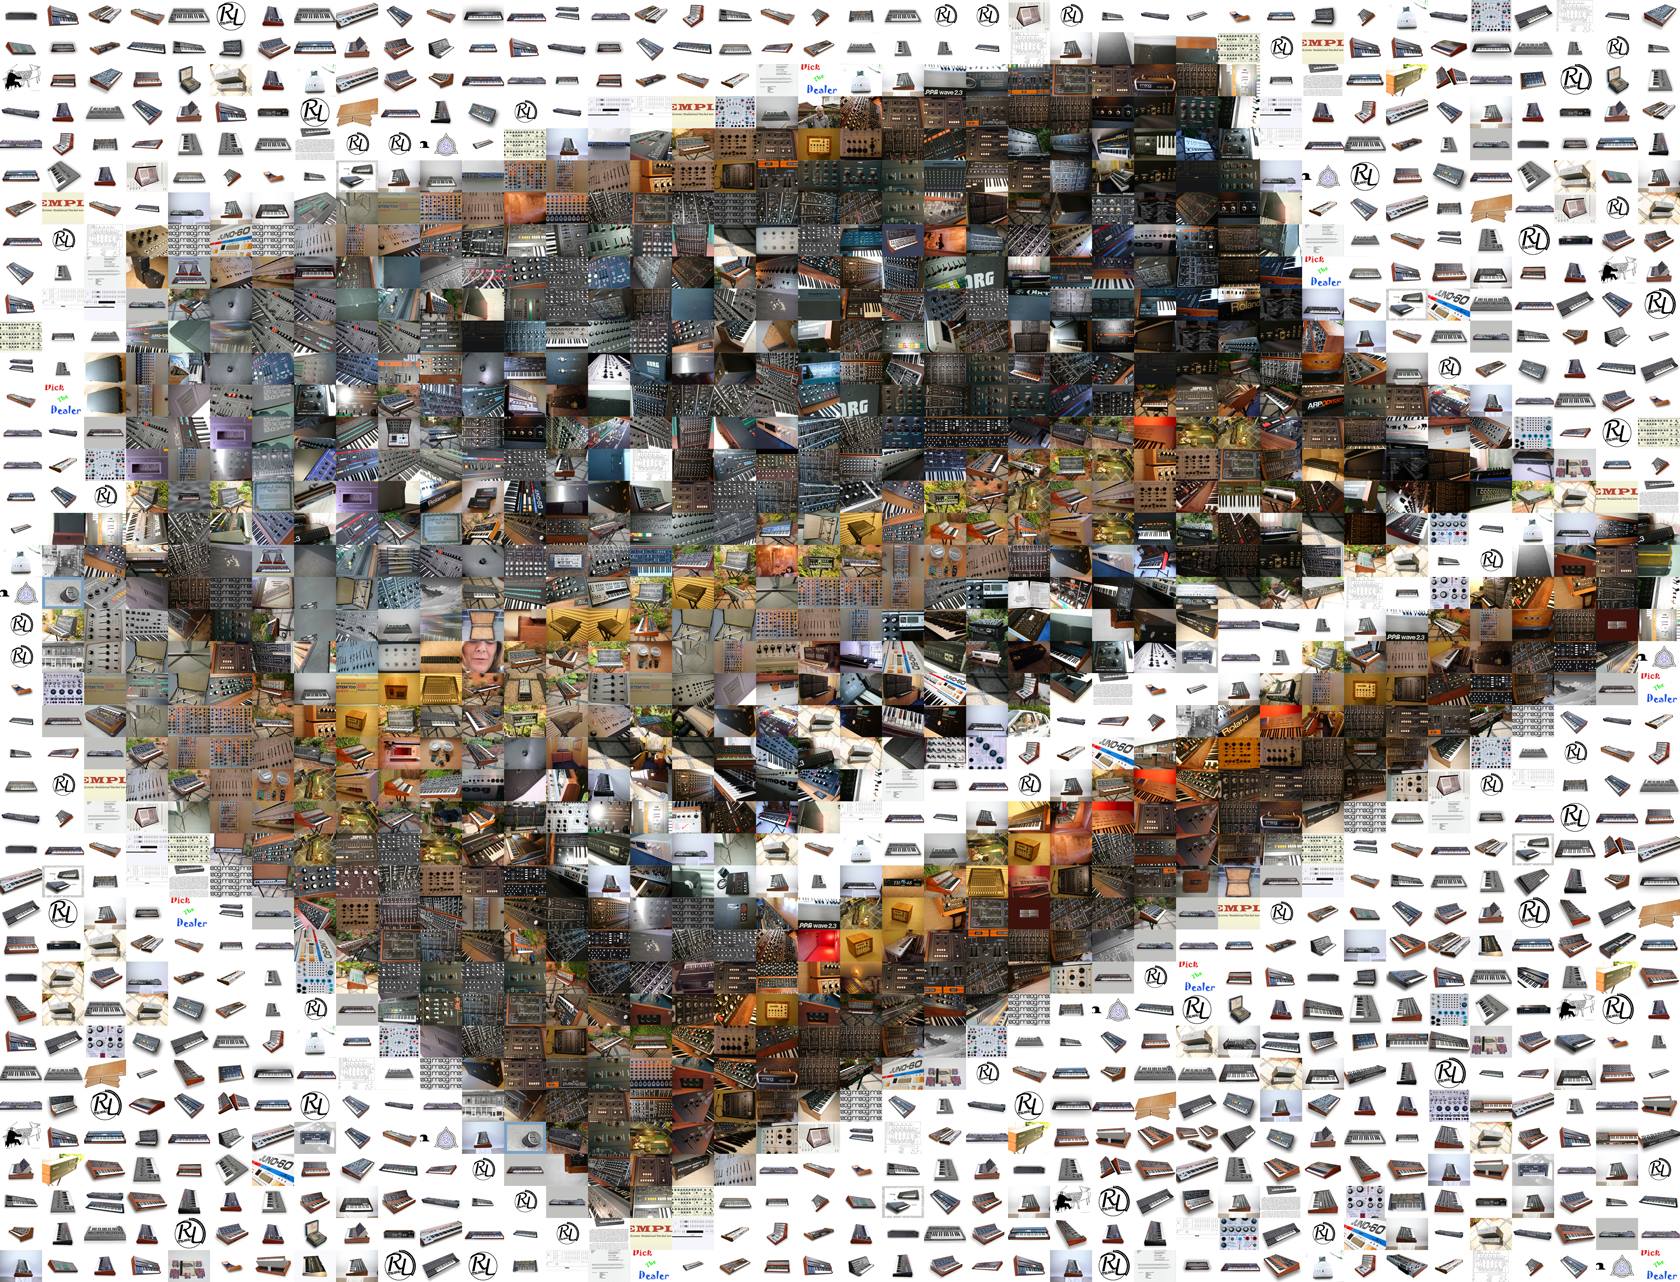 El sinte Minimoog "mosaico" de RL Music